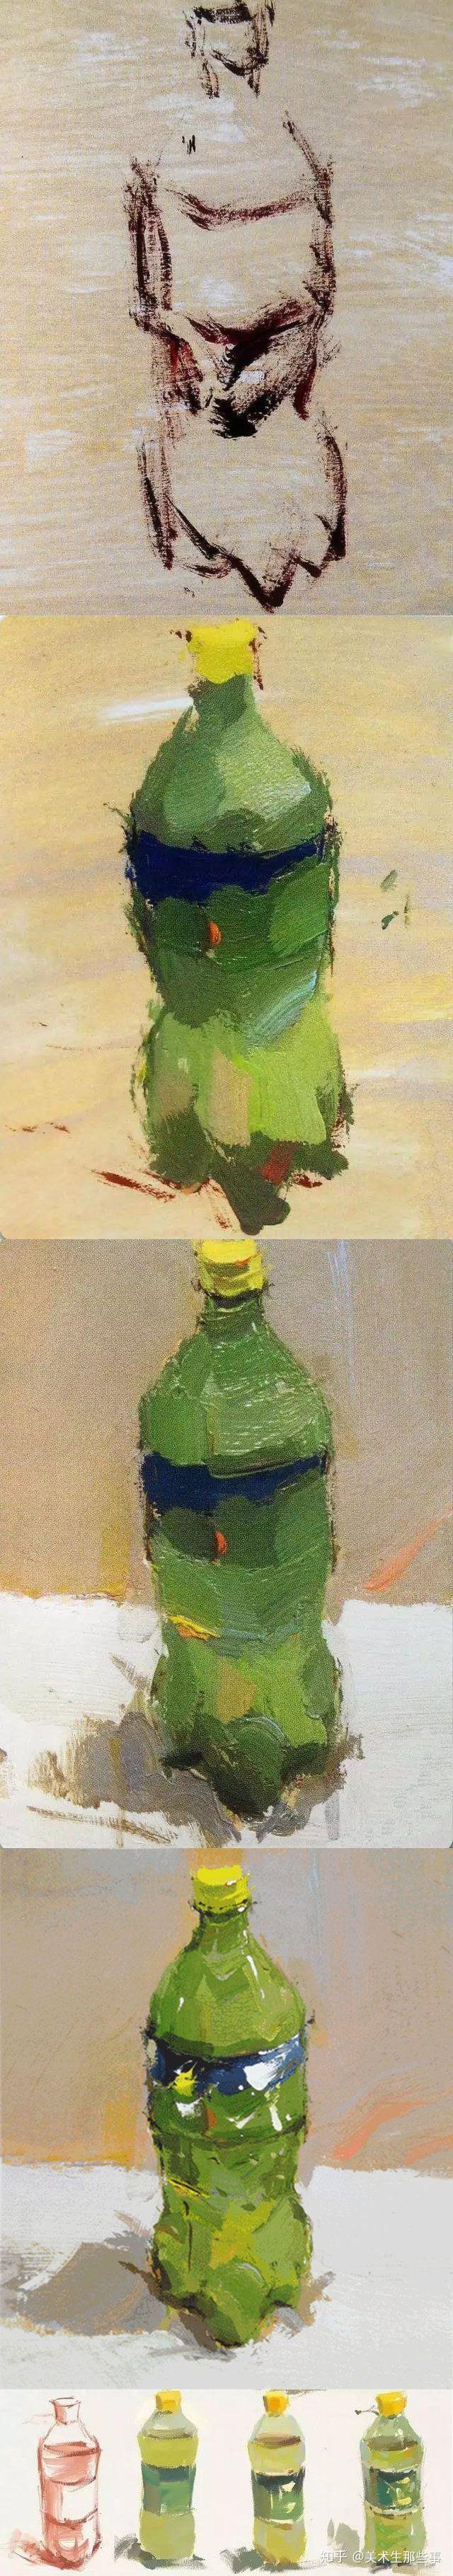 色彩静物单体雪碧瓶的画法瓶子可分三部分来看瓶子瓶子里装有饮料瓶子